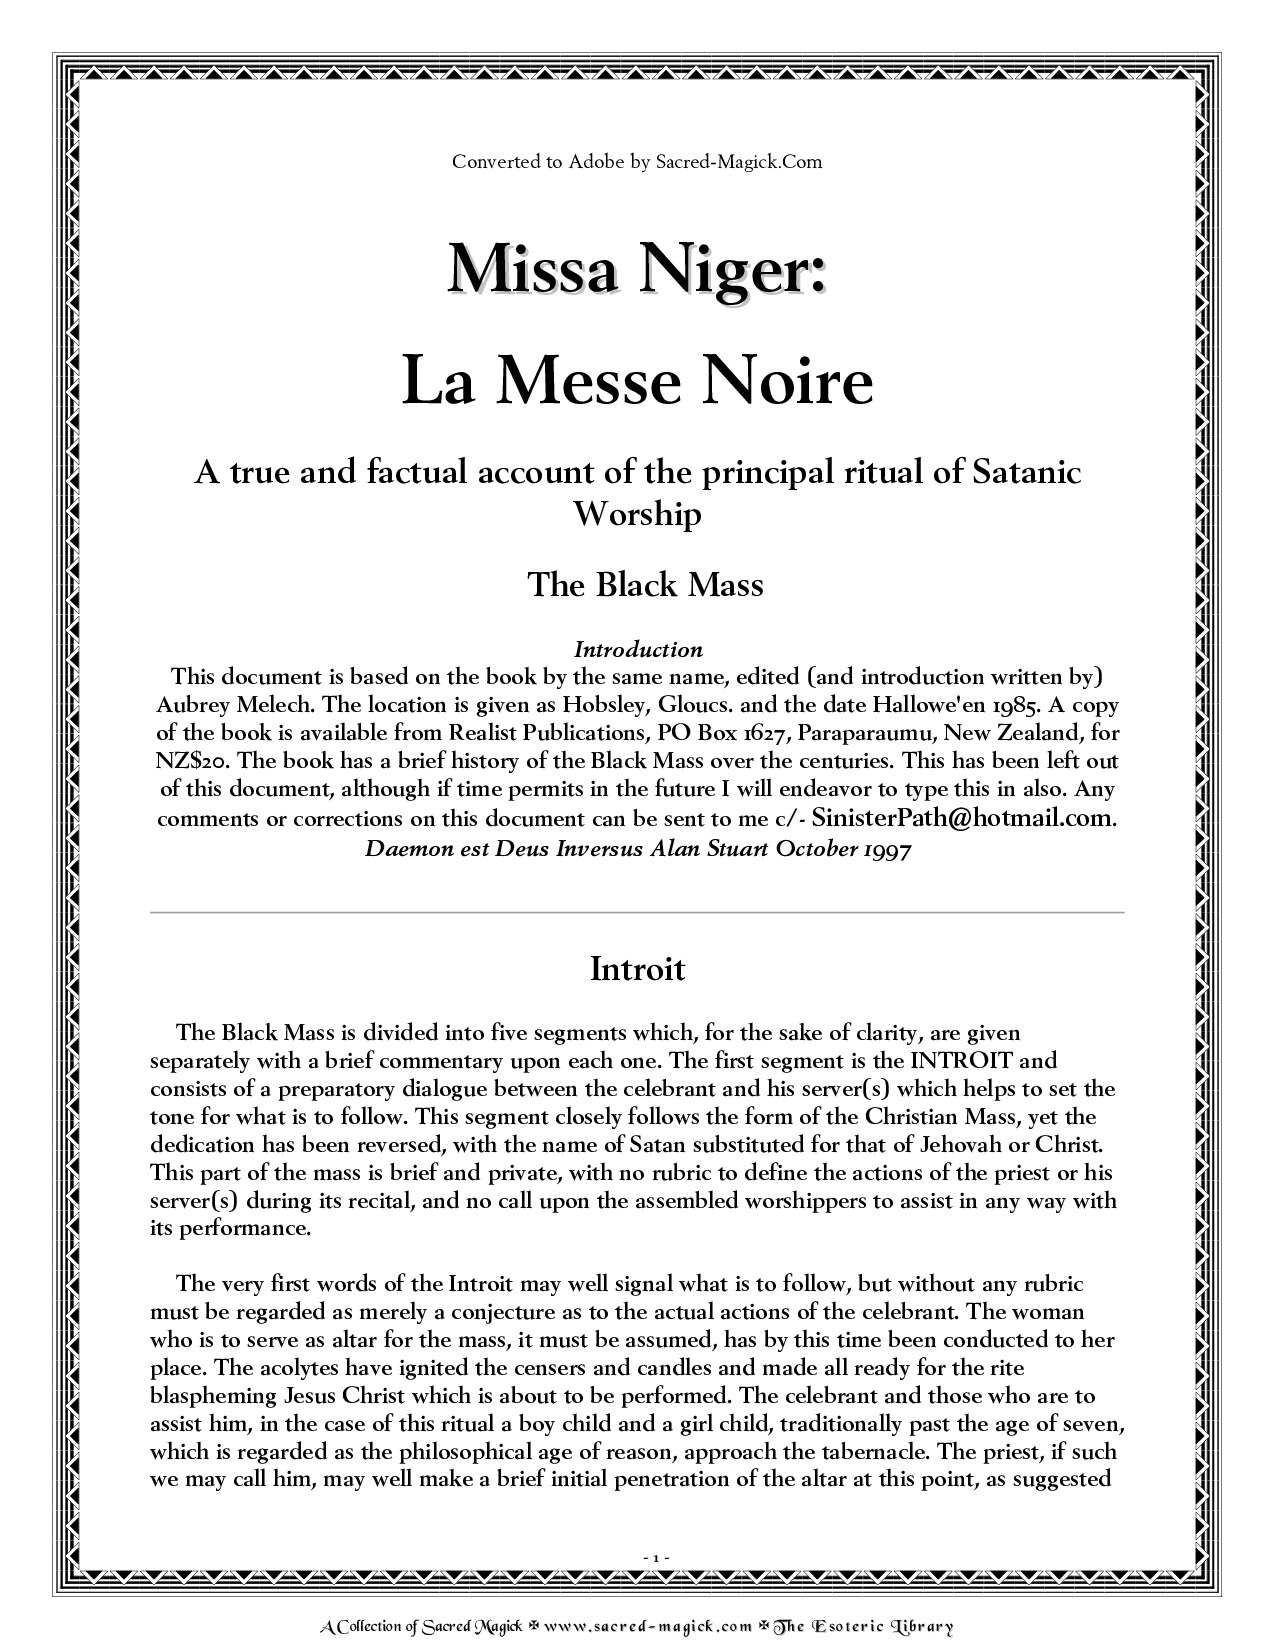 La Messe Noire - The Black Mass